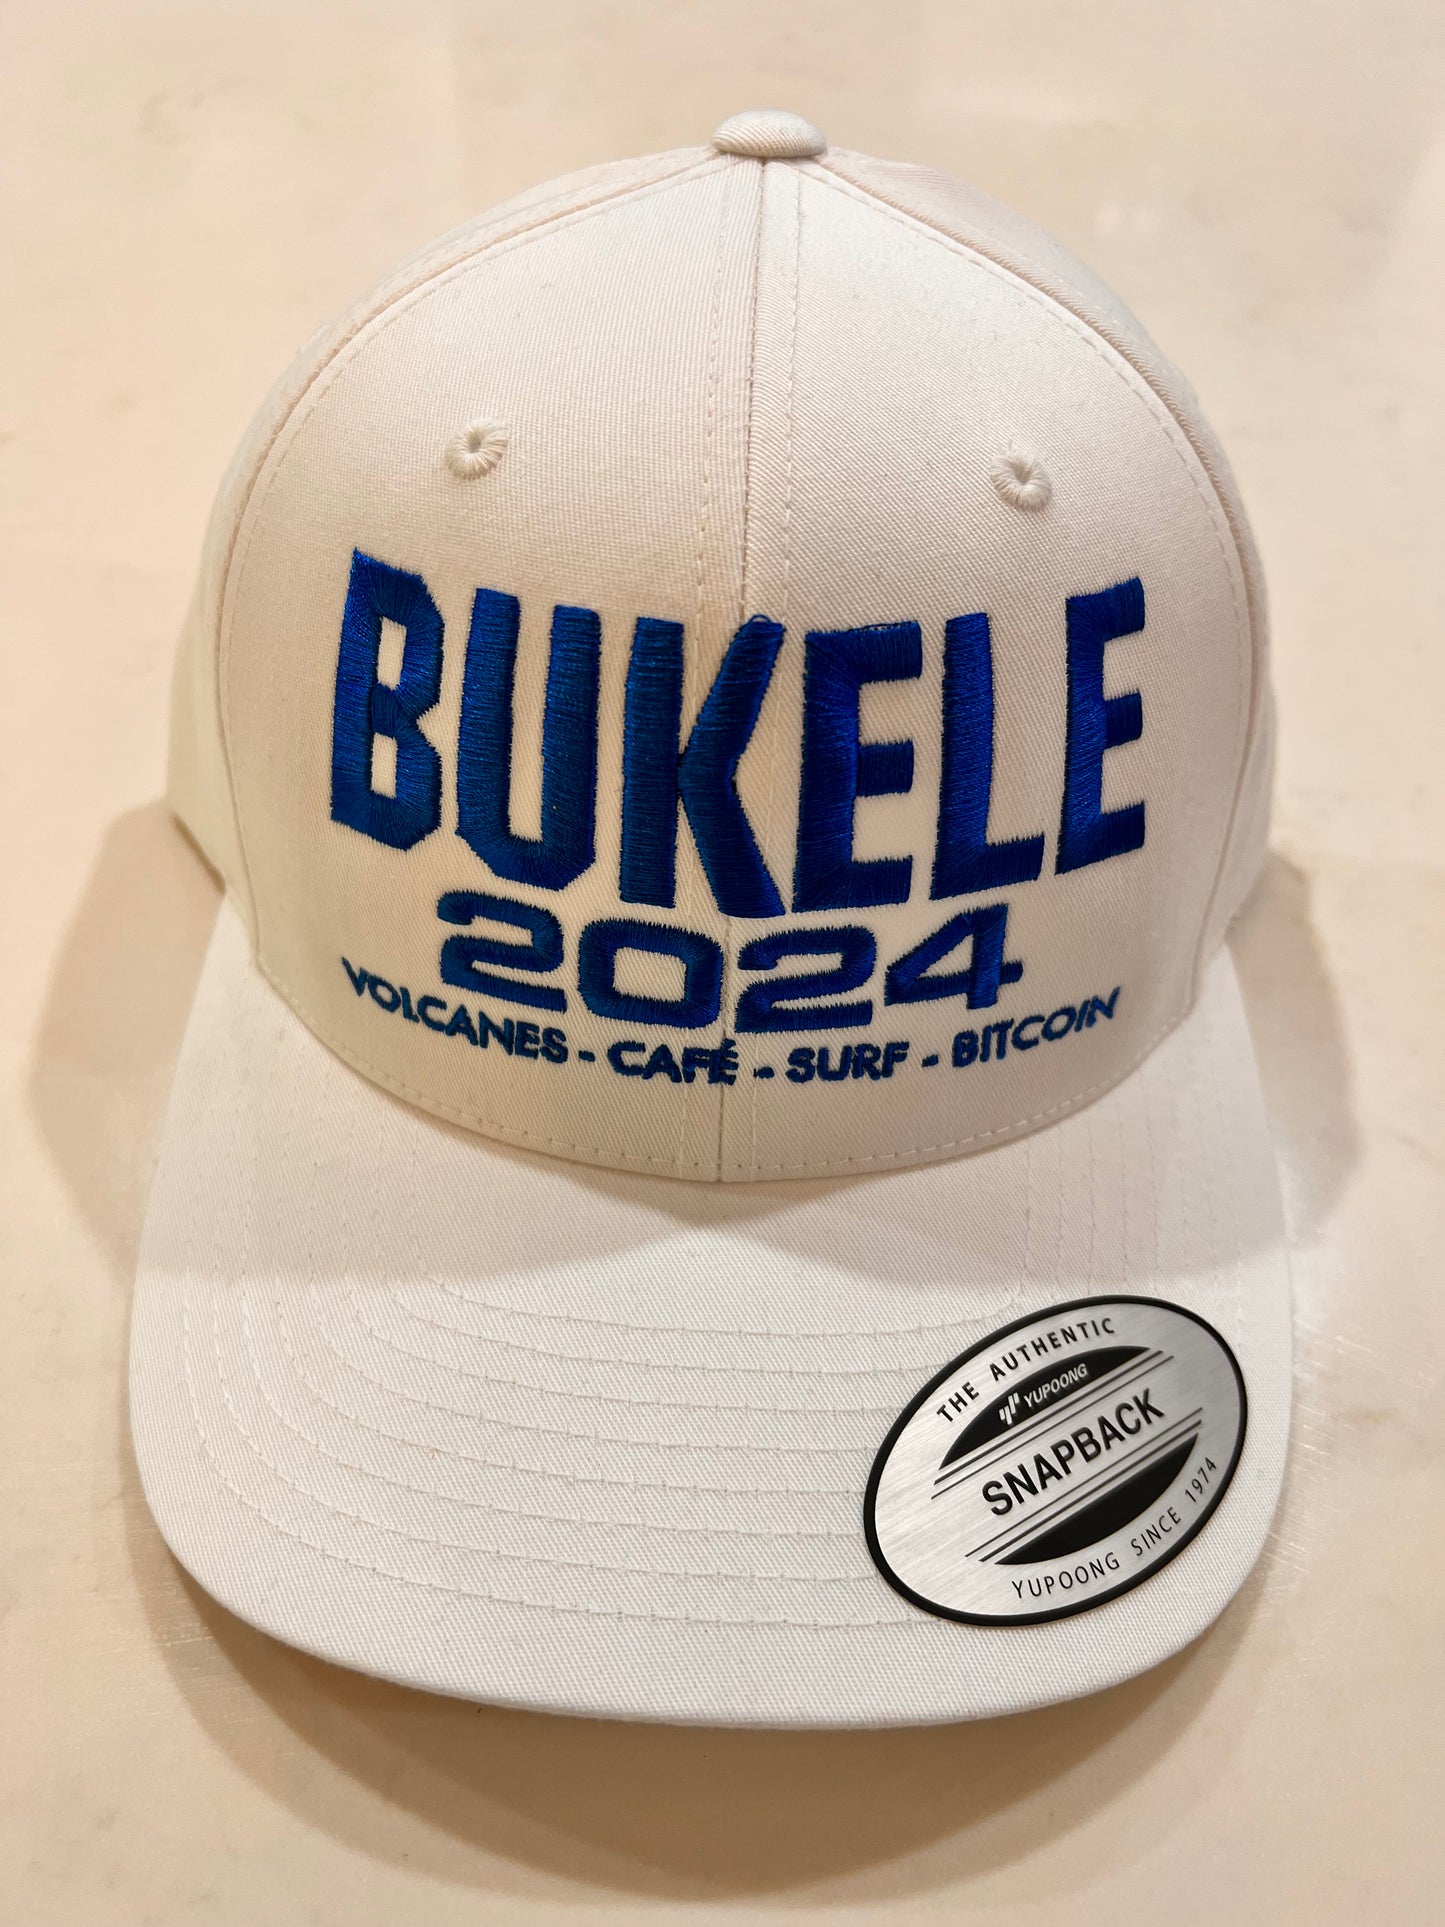 President Bukele's White Cap